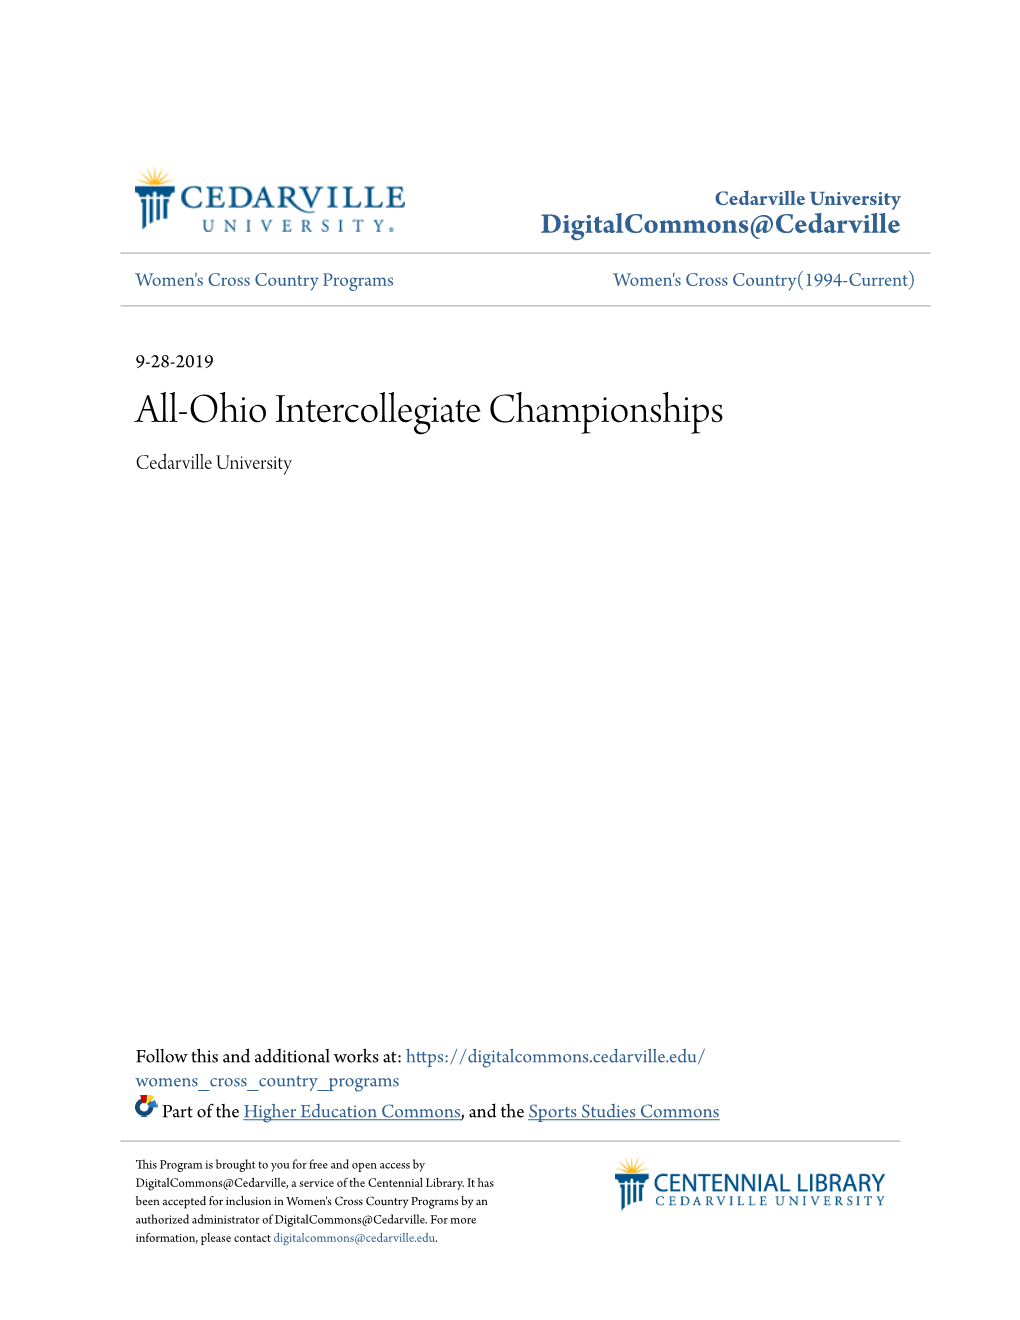 All-Ohio Intercollegiate Championships Cedarville University